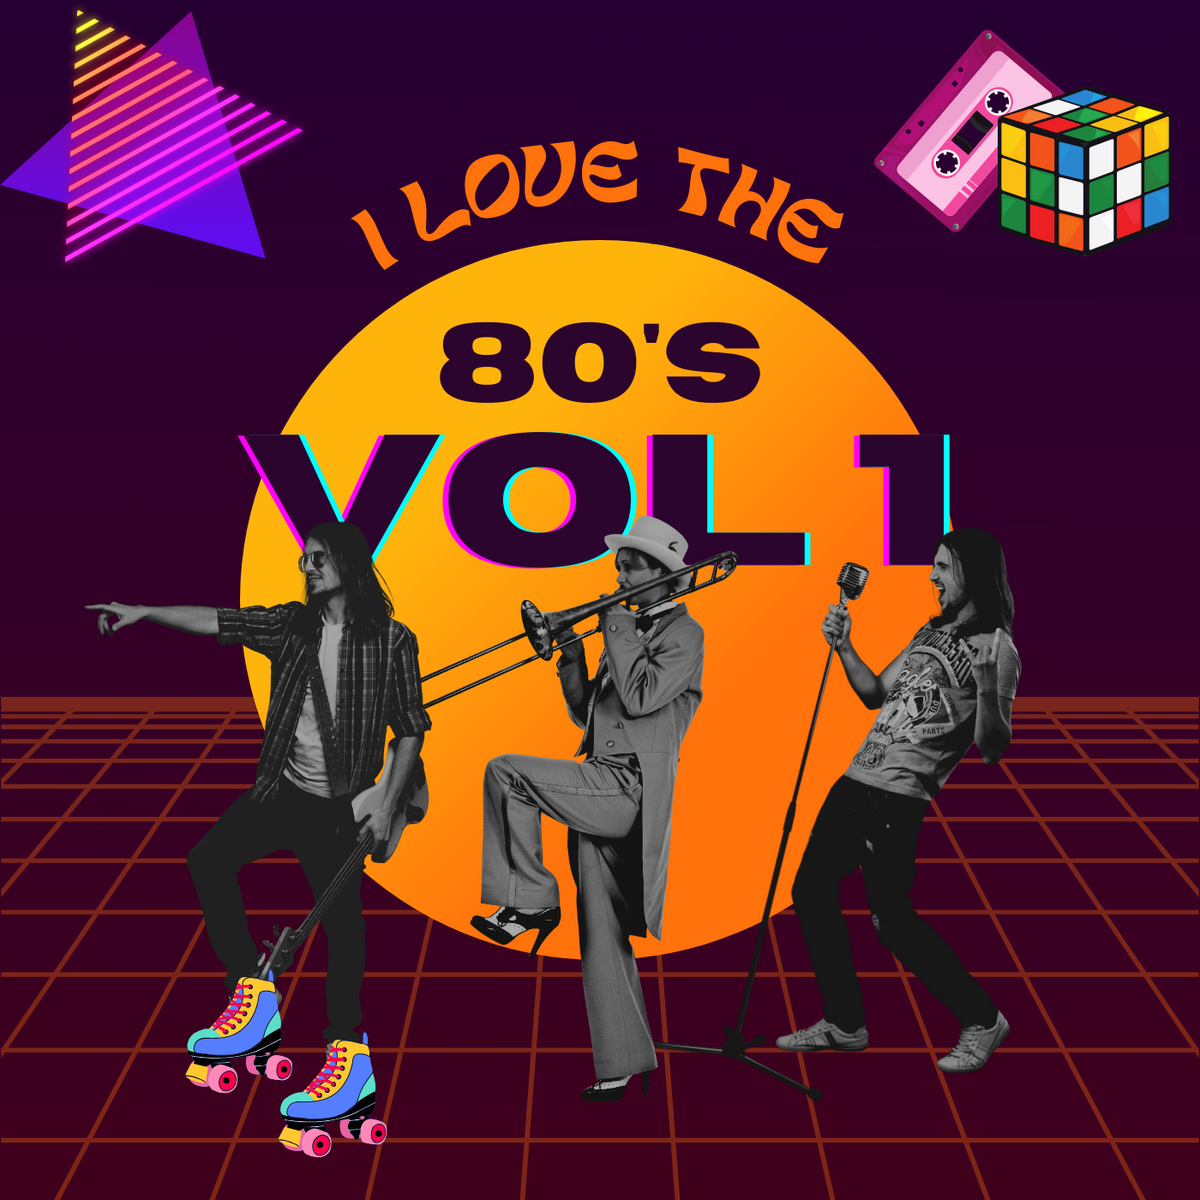 I Love The 80's Vol 1